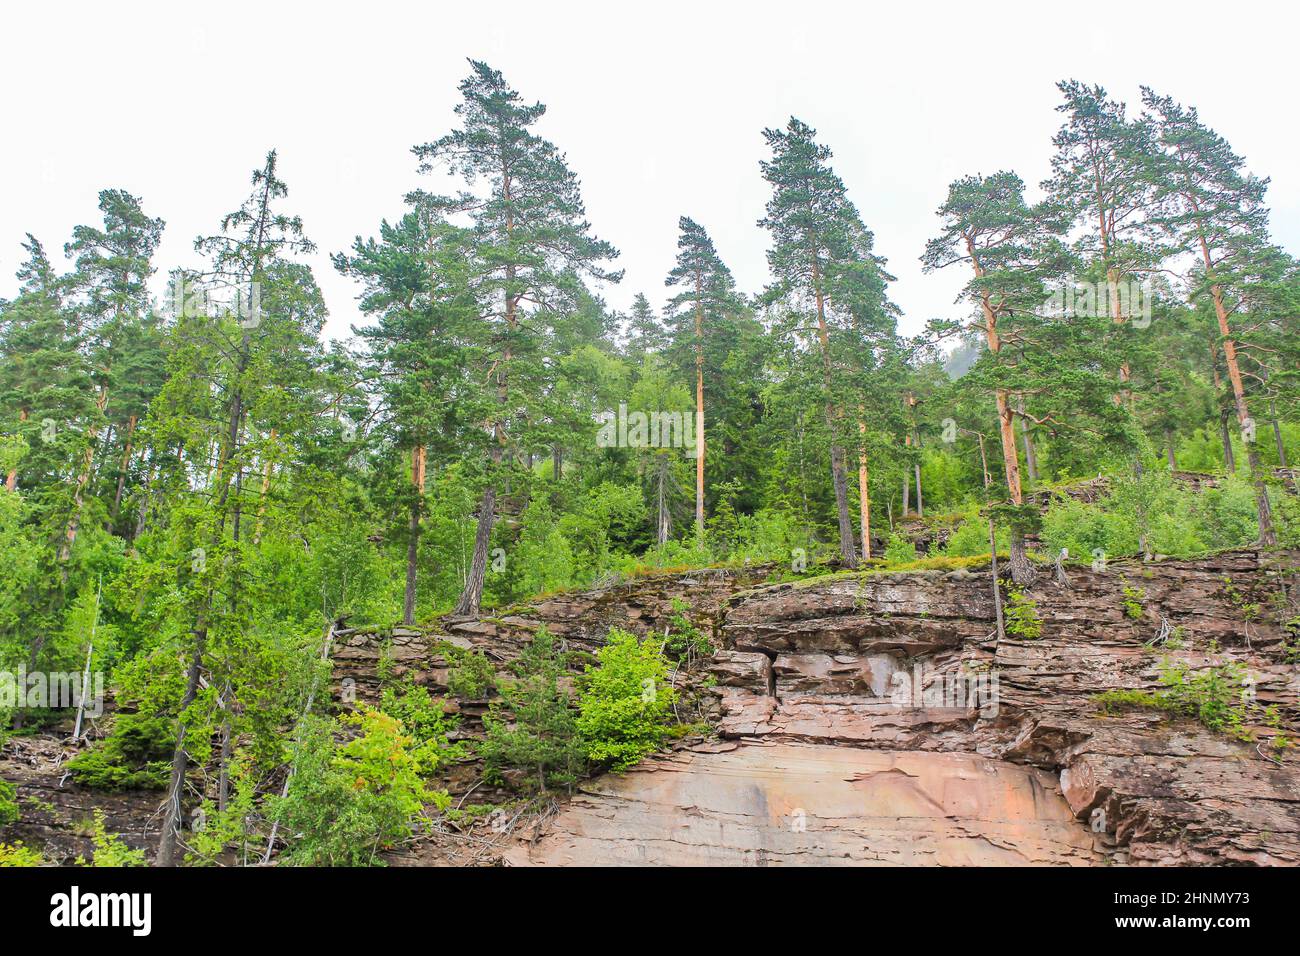 Paysage norvégien avec arbres ferme montagnes et rochers. Norvège nature. Banque D'Images